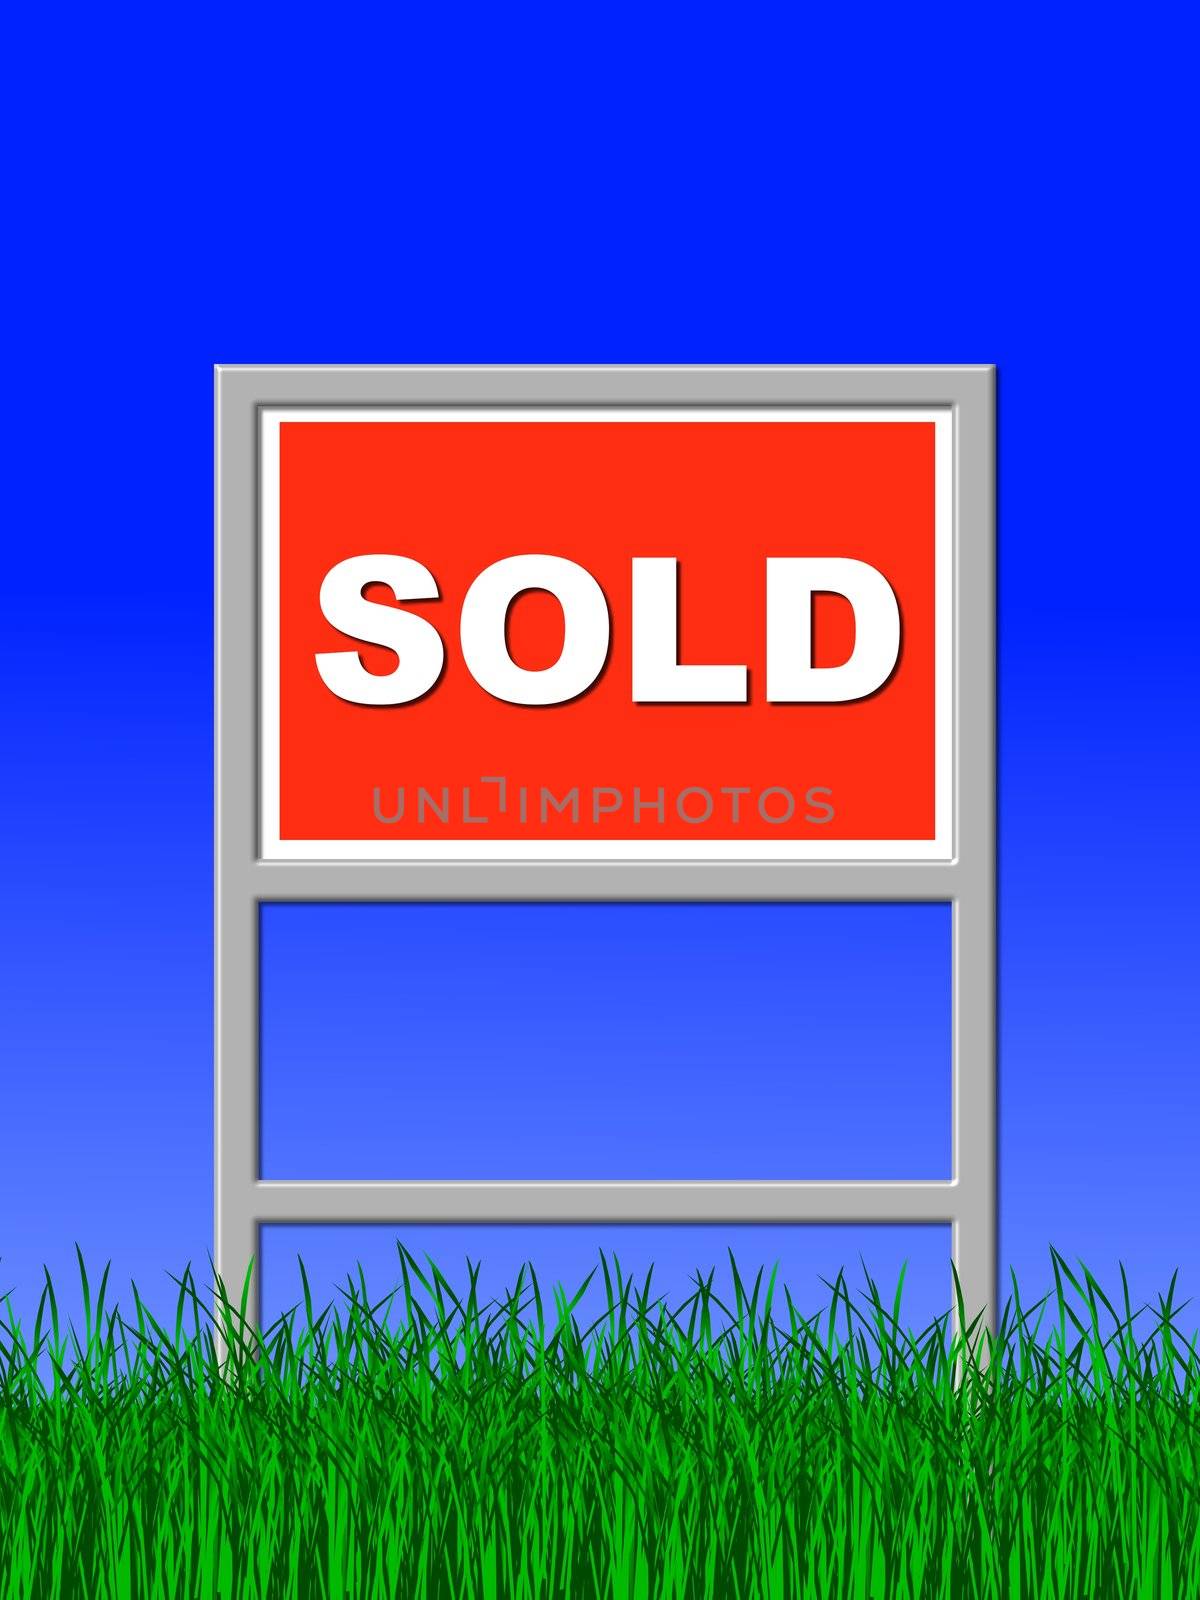 real estate sign sold